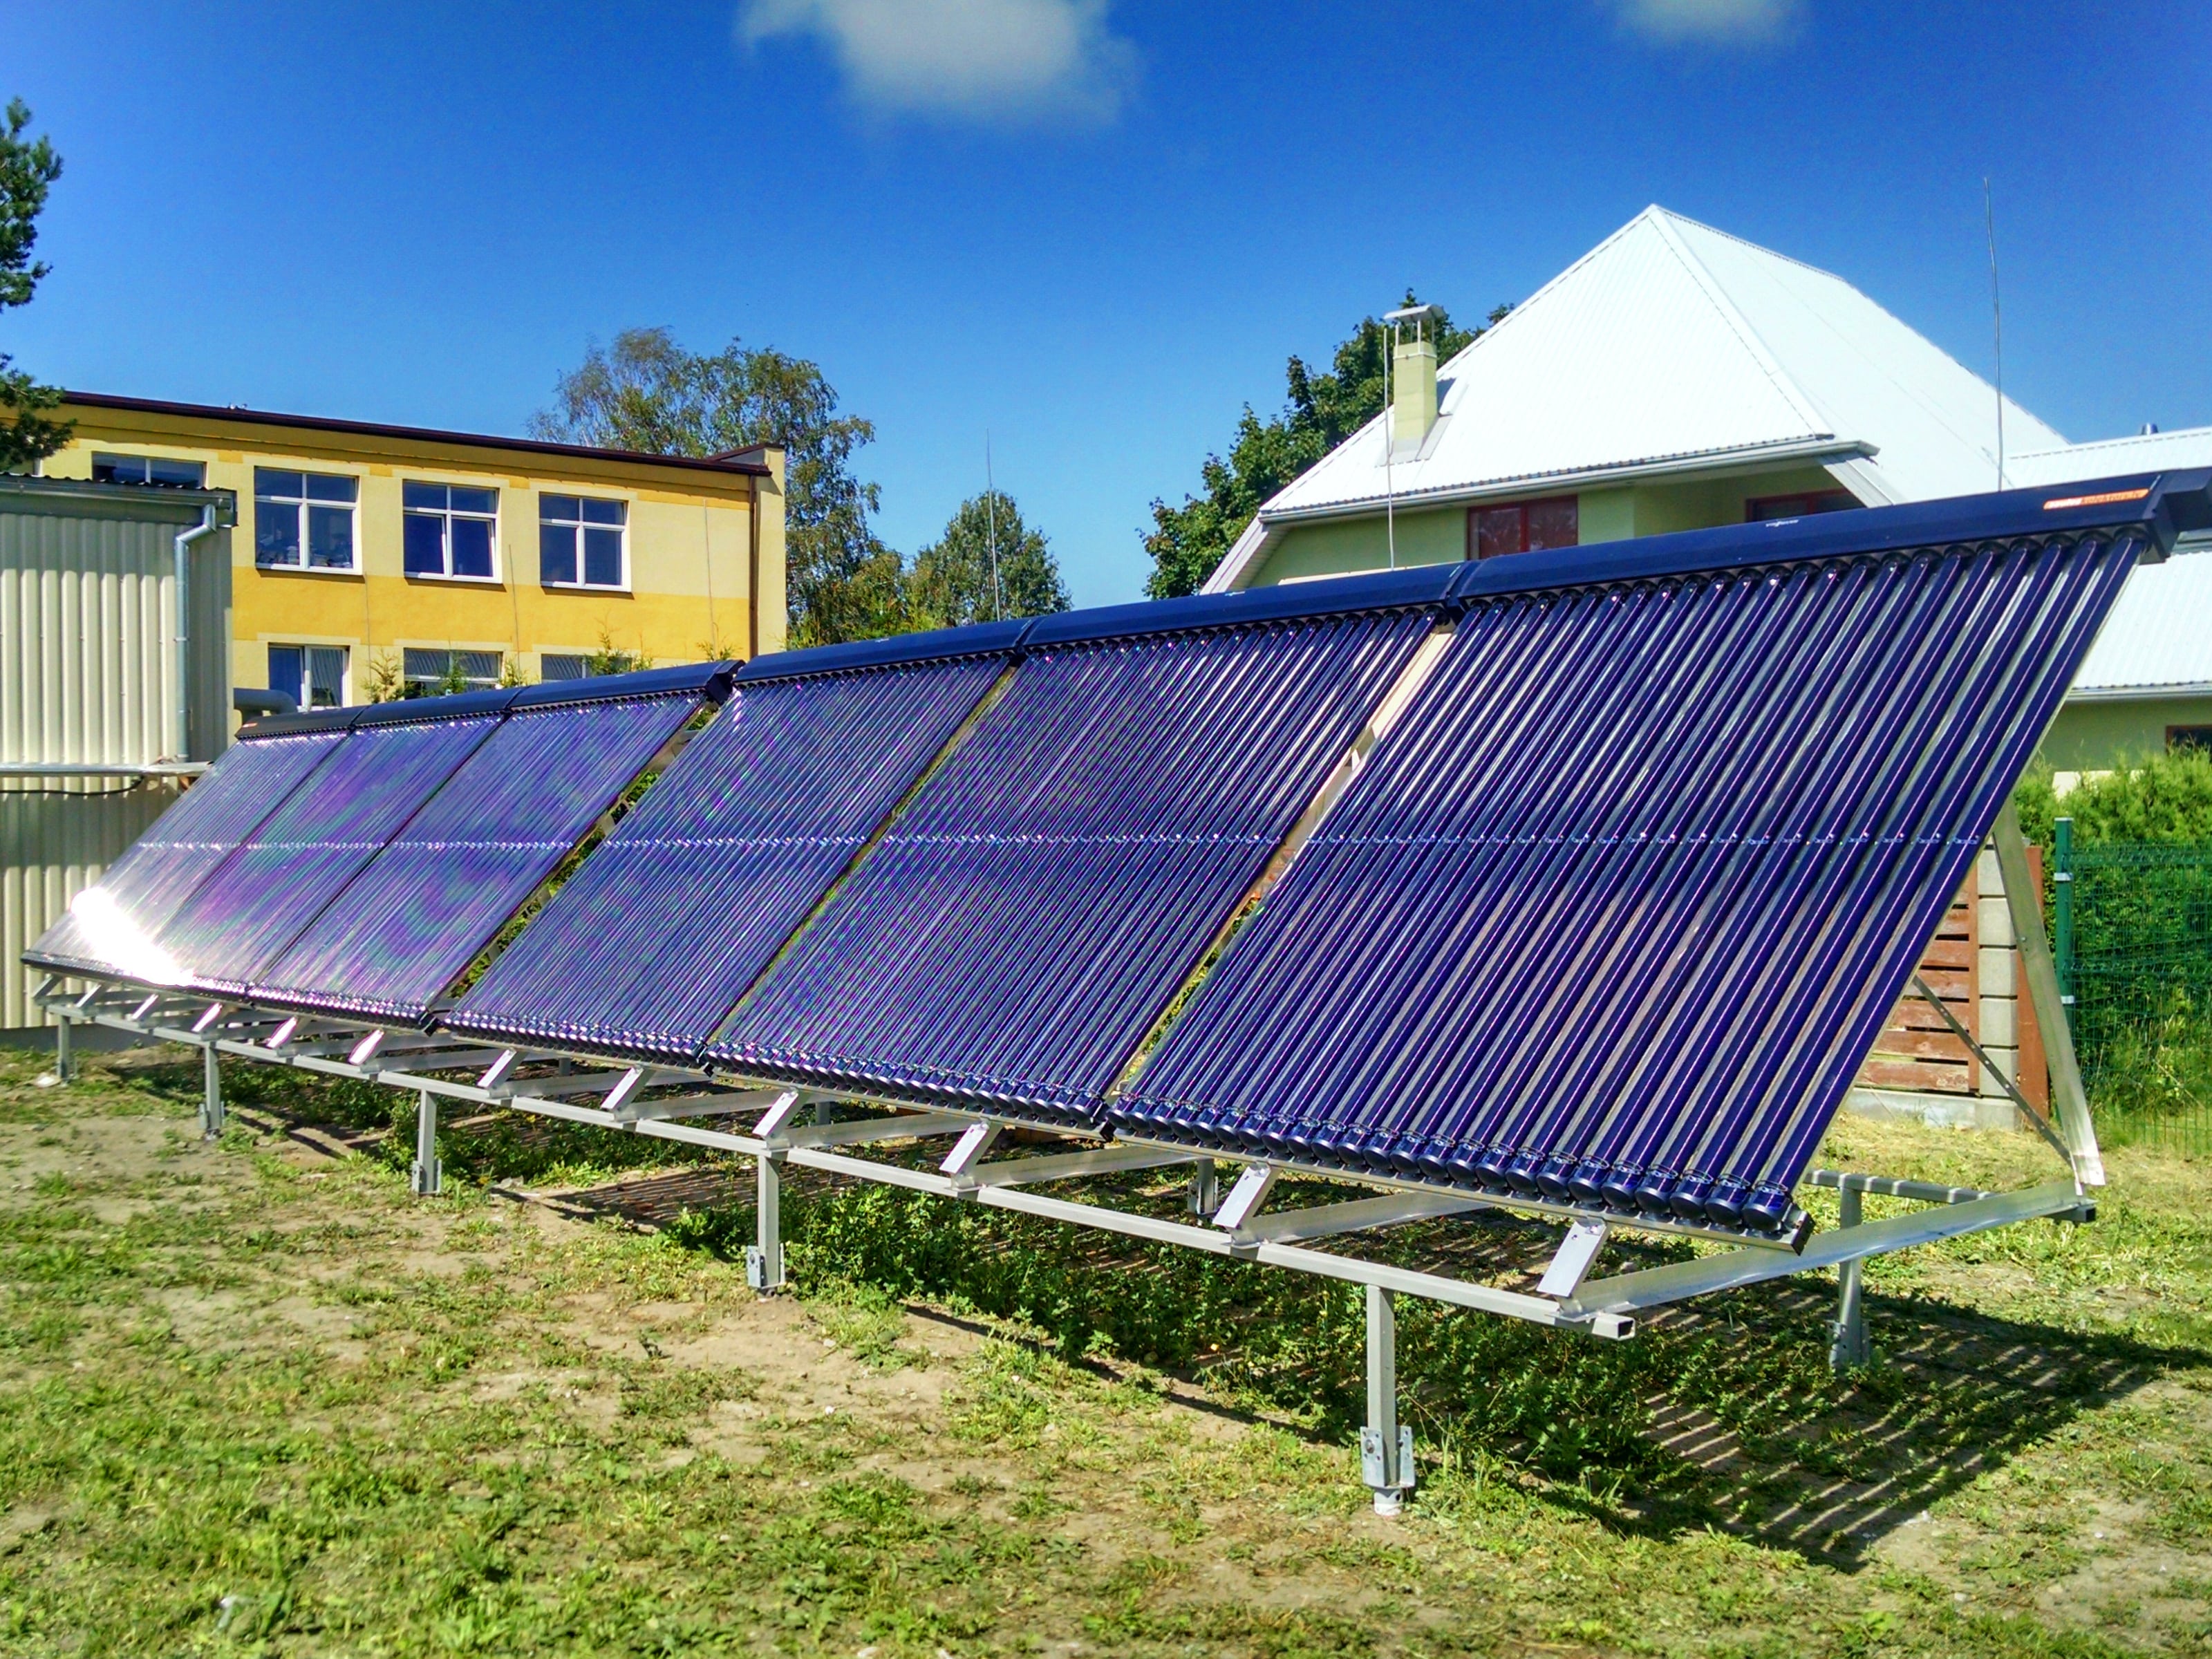 Saules kolektoru sistēma siltuma ražotāja “Liepājas enerģija” vajadzībām